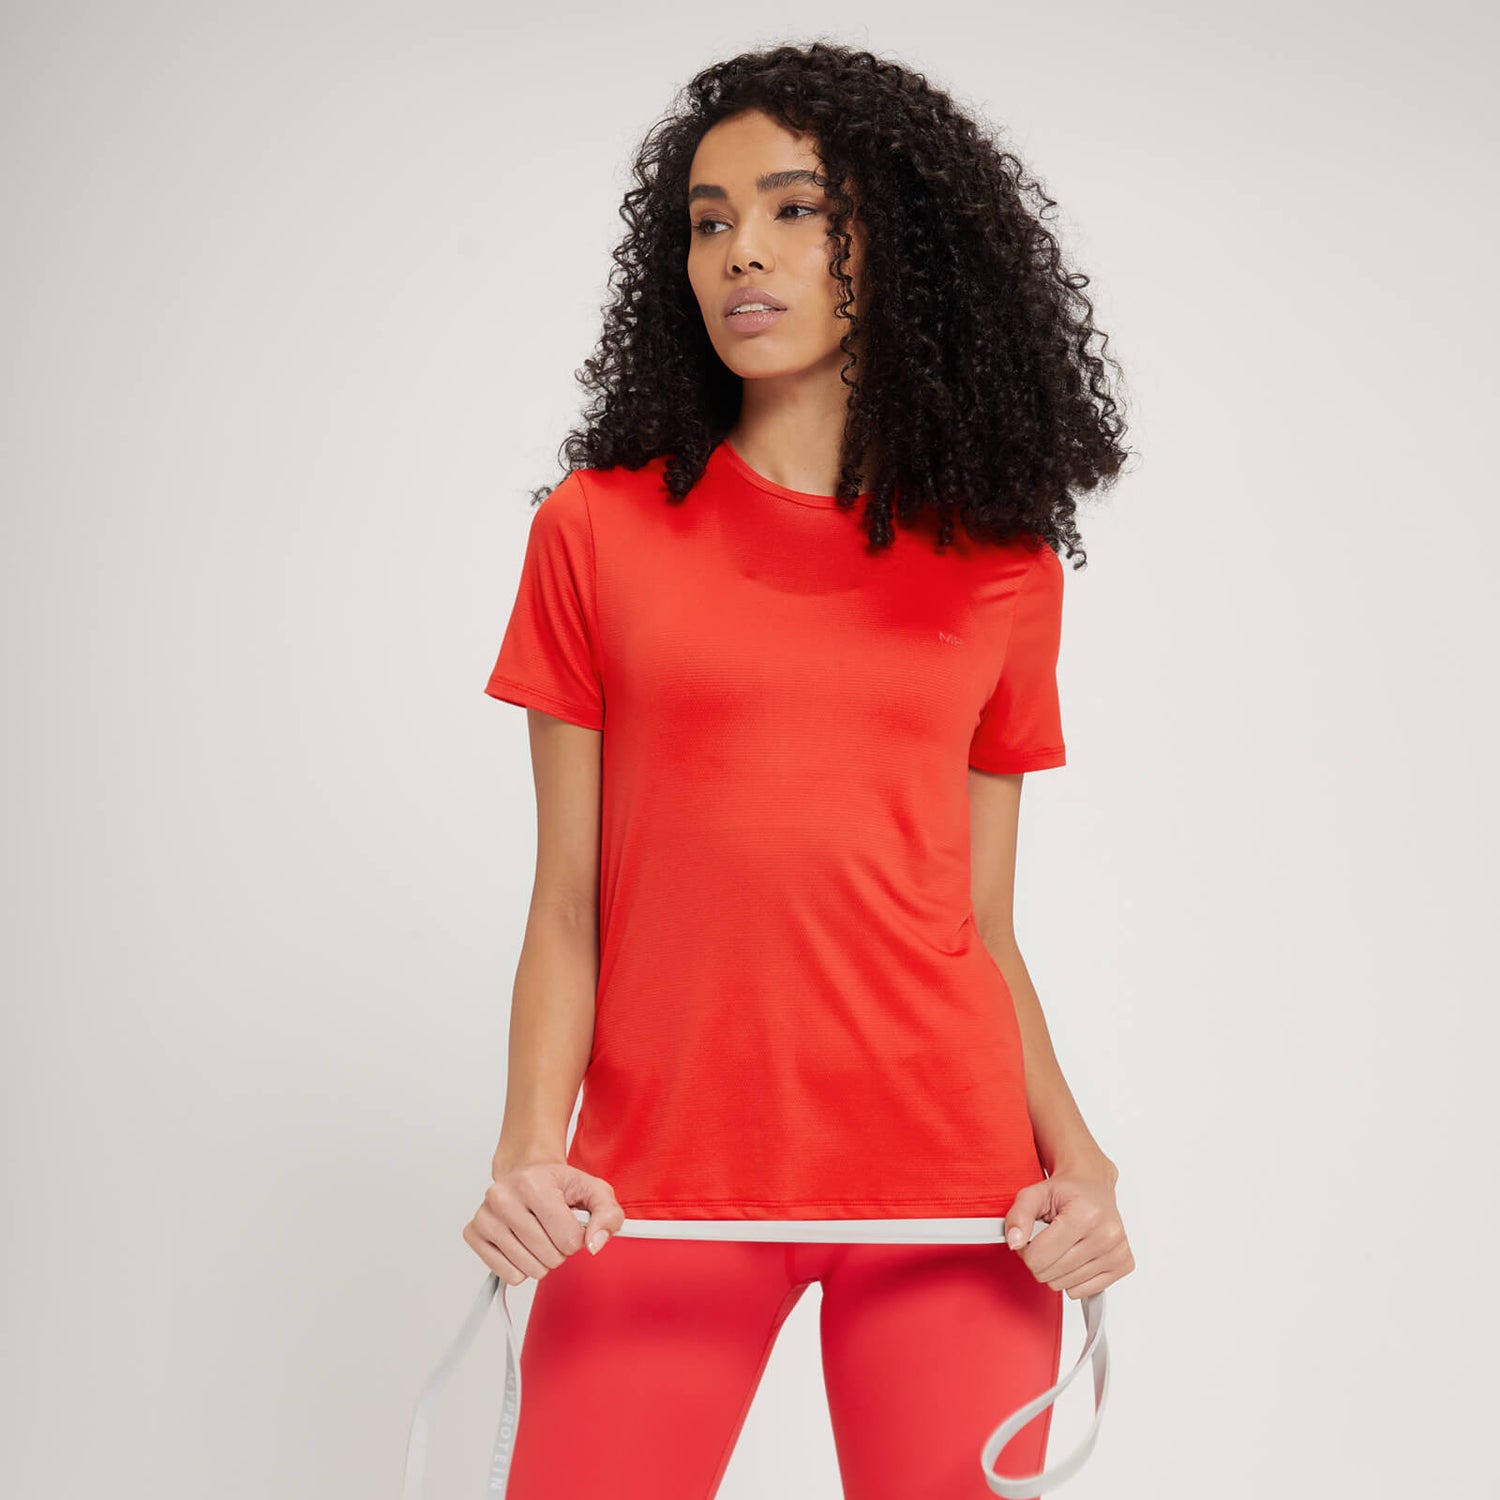 Camiseta con abertura en la espalda Power Ultra para mujer de MP - Rojo - XS